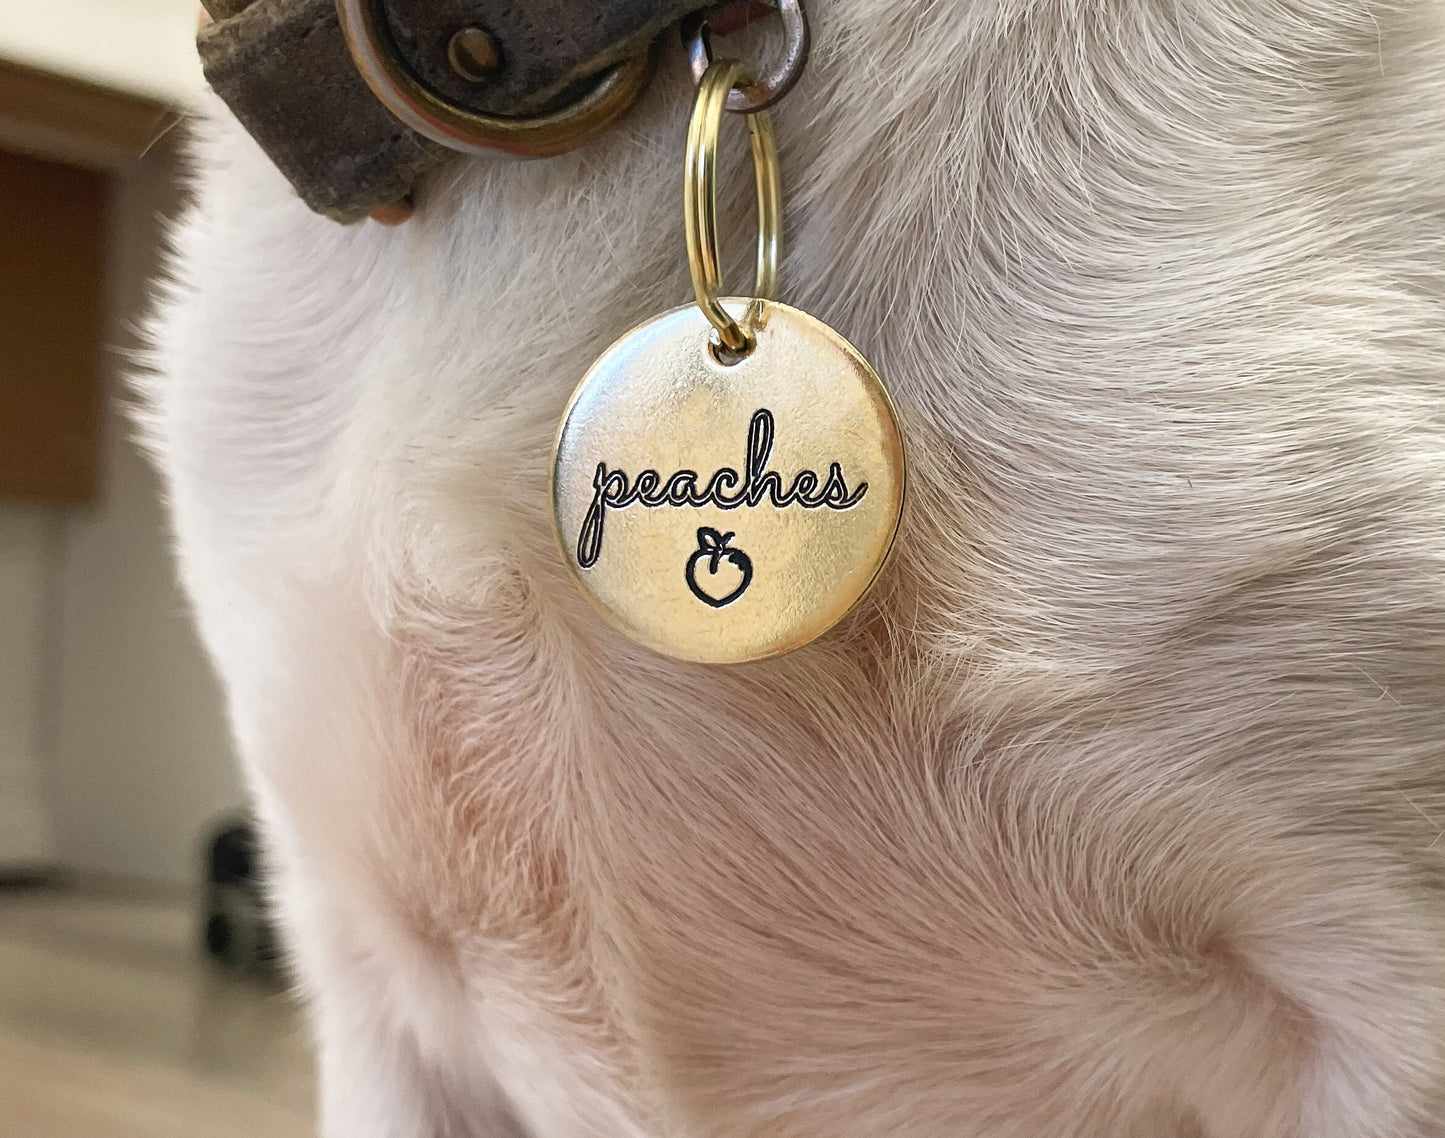 Personalized Dog Tag - Peach Design Engraved Dog Tag - Cat ID Tag - Dog Collar Tag - Custom Dog Tag - Pet ID Tag - Pet Name Tag - Peach Dog Tag - Fruit Emoji Dog Tag - Dog Gear - Dog Accessories - Pet Accessories